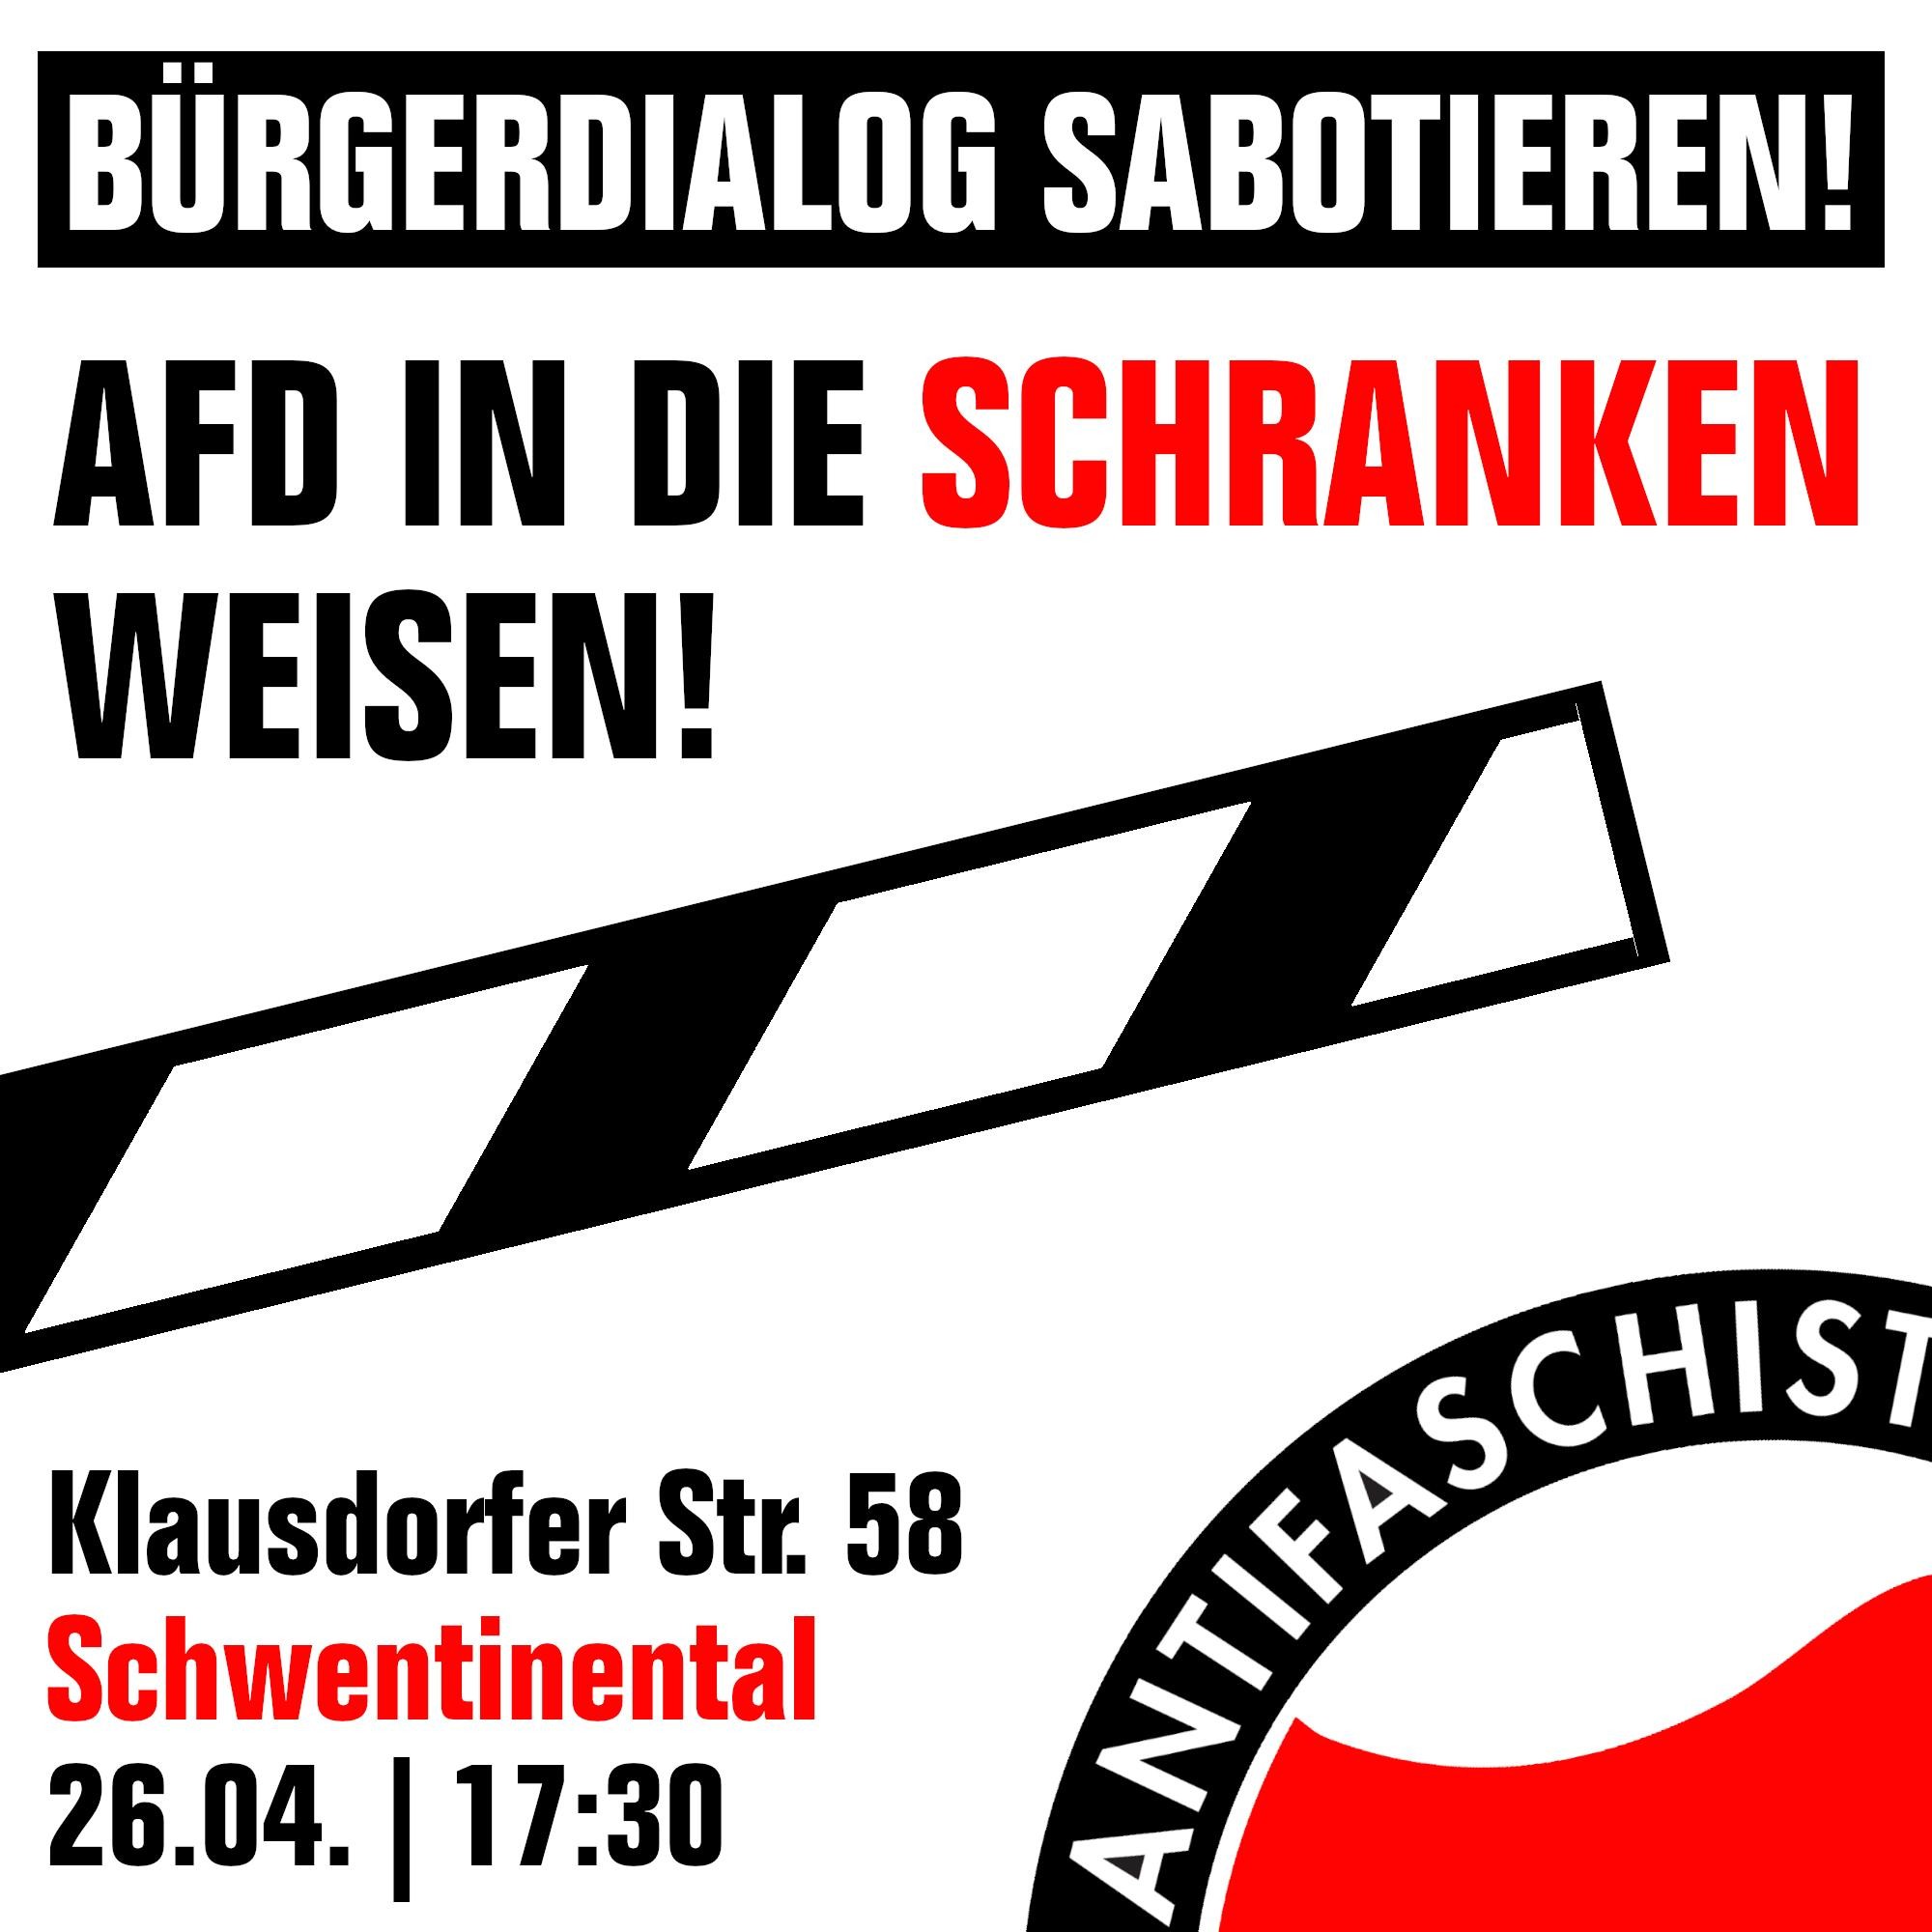 Auf dem Bild steht: Bürgerdialog sabotieren! Afd in die Schranken weisen! Klausdorfer Straße 58 Schwentinental. Freitag 26.4. 17:30 Uhr